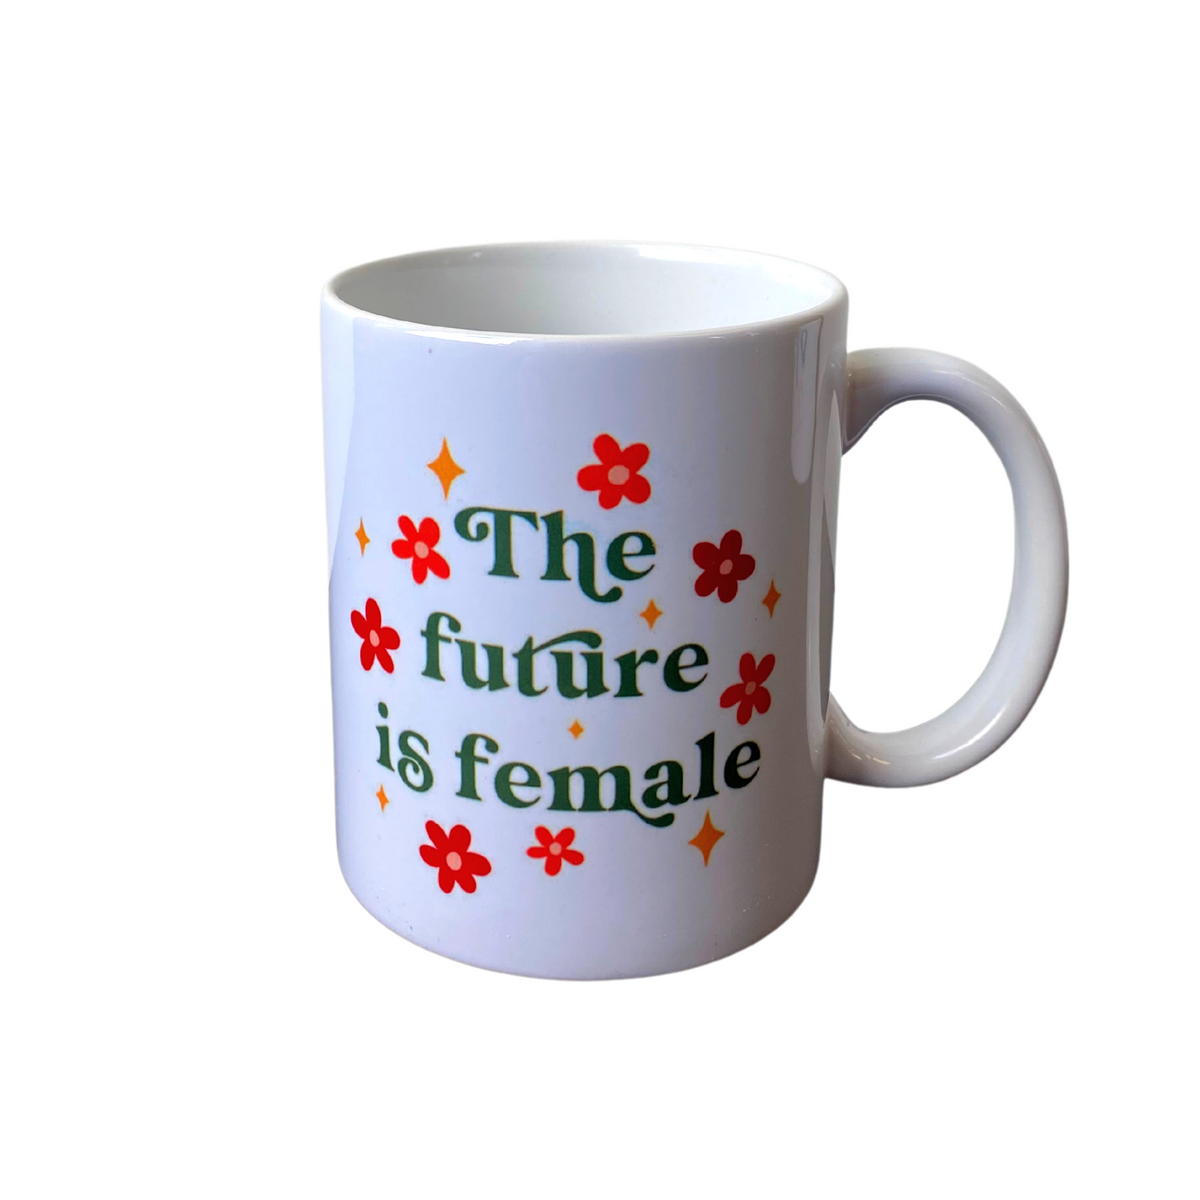 The Future is Female Coffee Mug